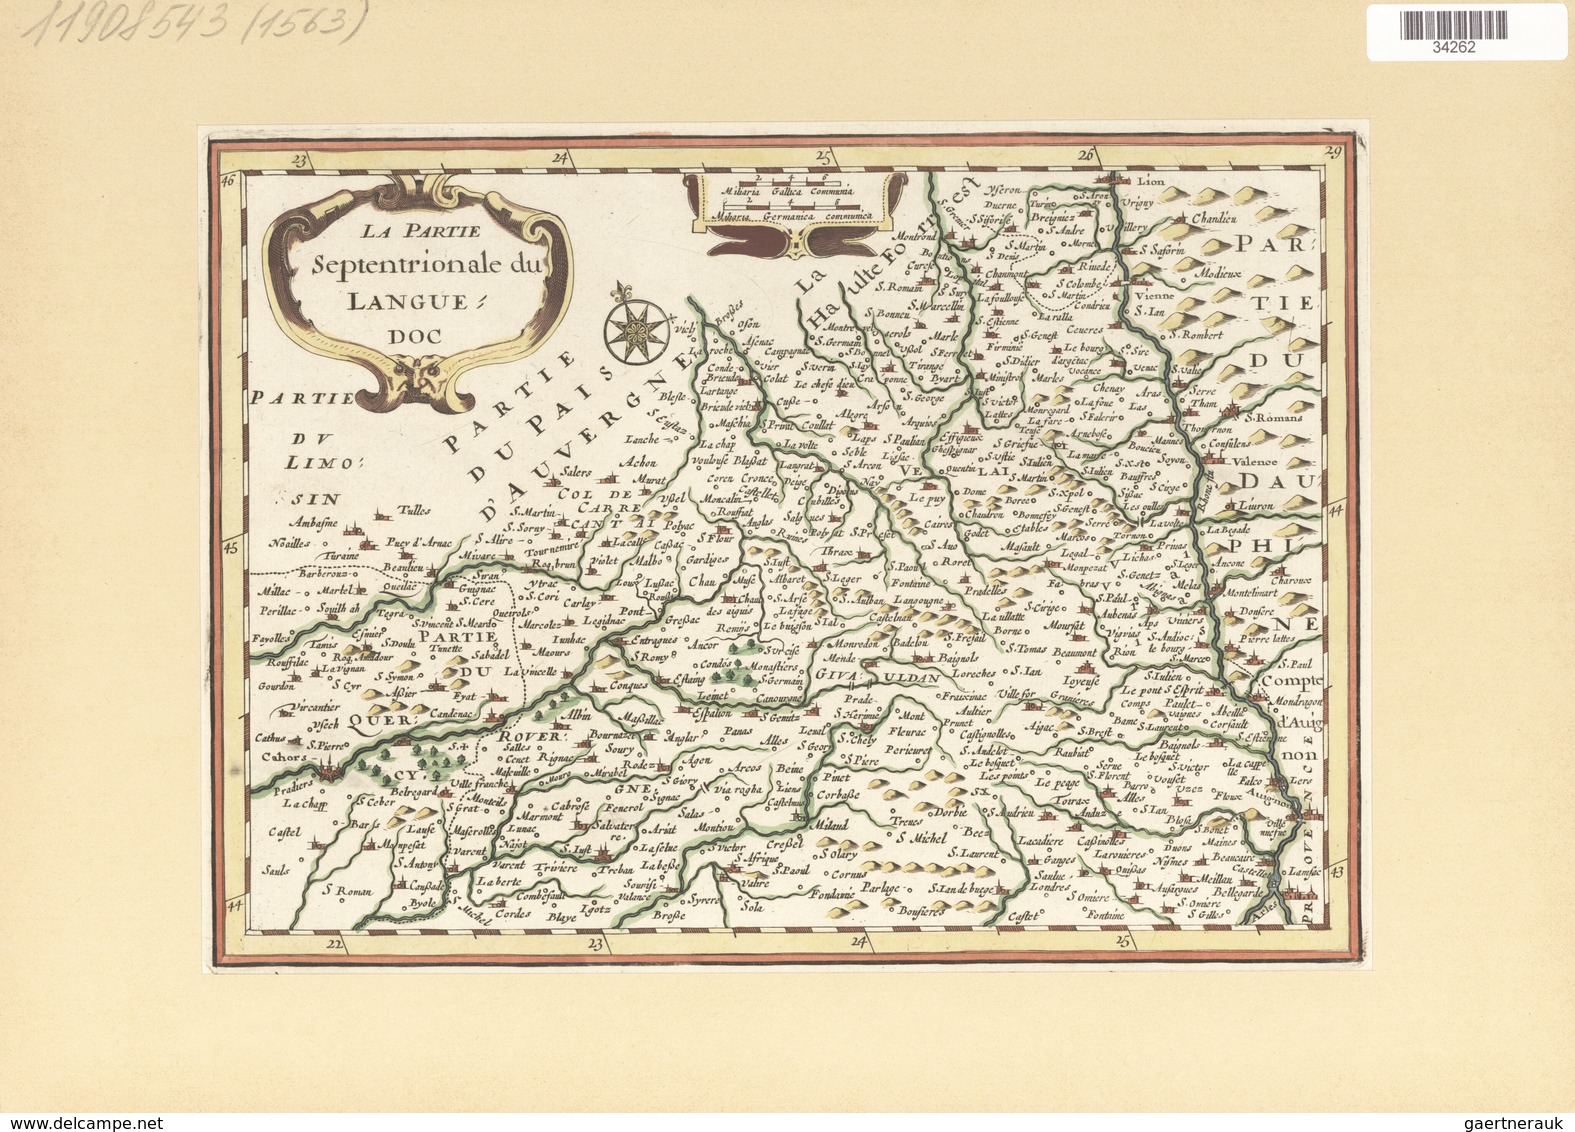 Landkarten Und Stiche: 1734. La Partie Septentrionale Du Languedoc. From The Mercator Atlas Minor Ca - Geography